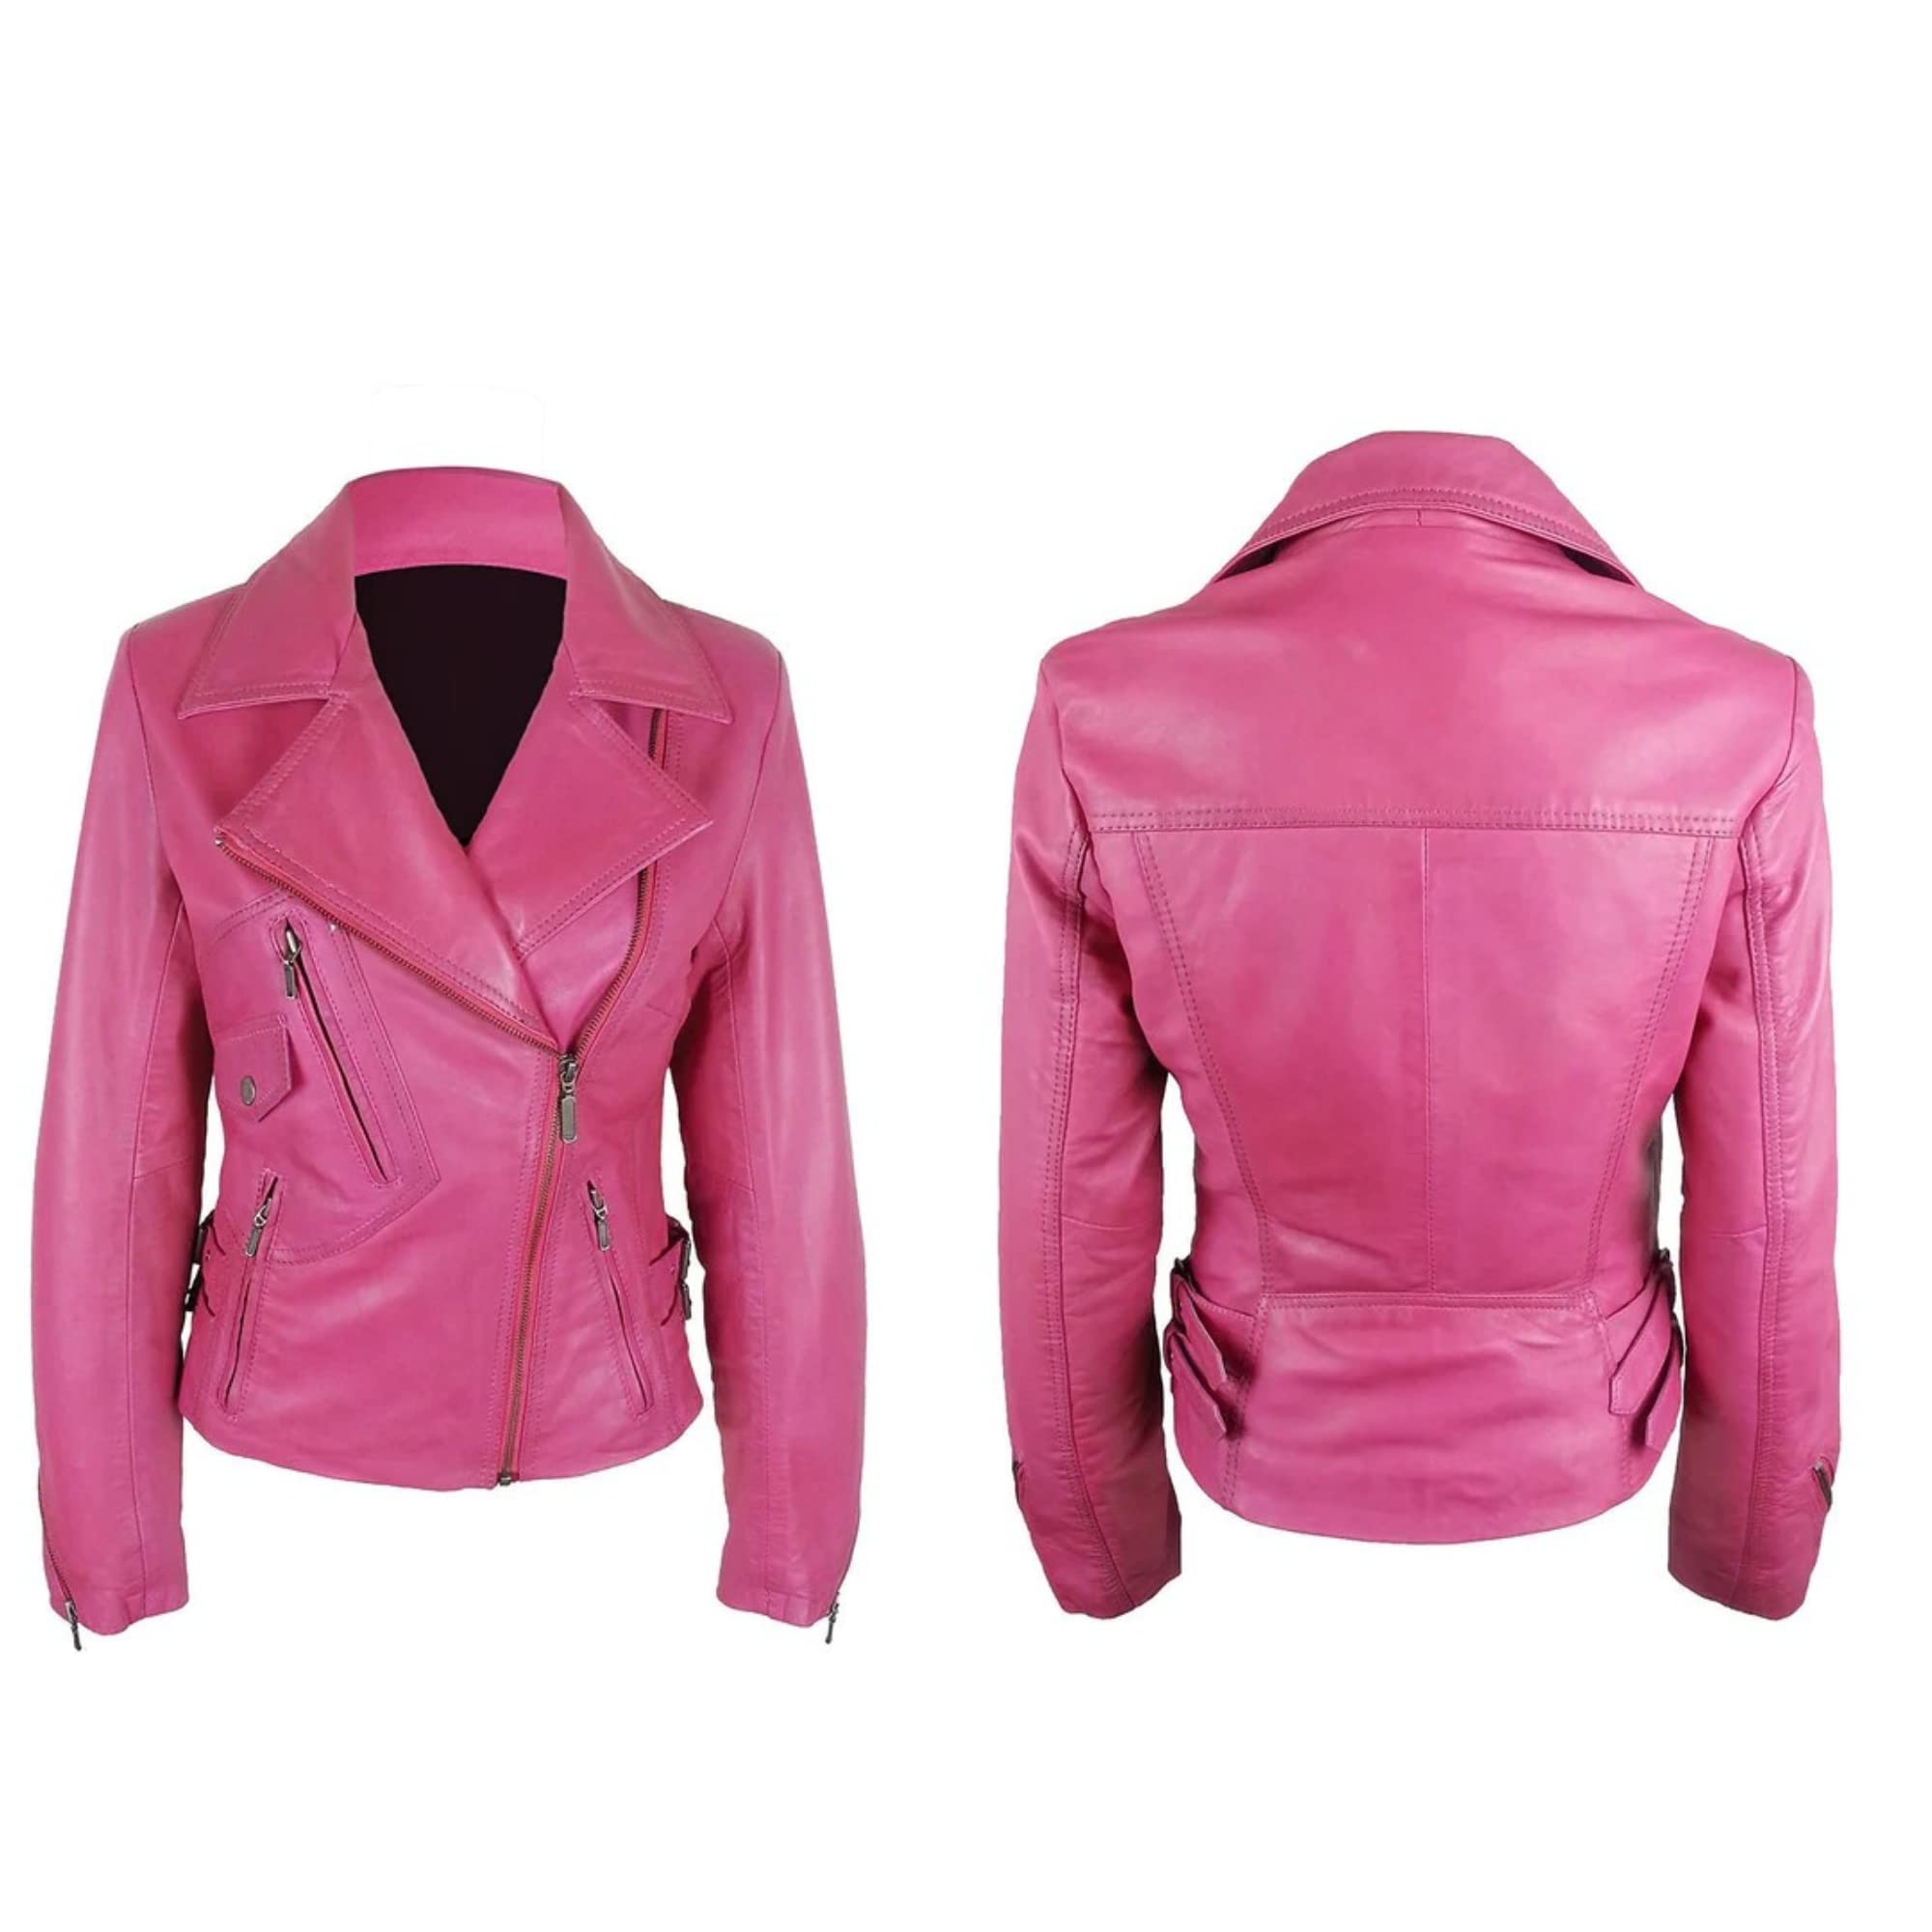 Women's Motorcycle Slim Fit Pink Jacket Pink Women's Motorcycle Jacket Racing jacket Leather jacket Slim Fit Hot Pink